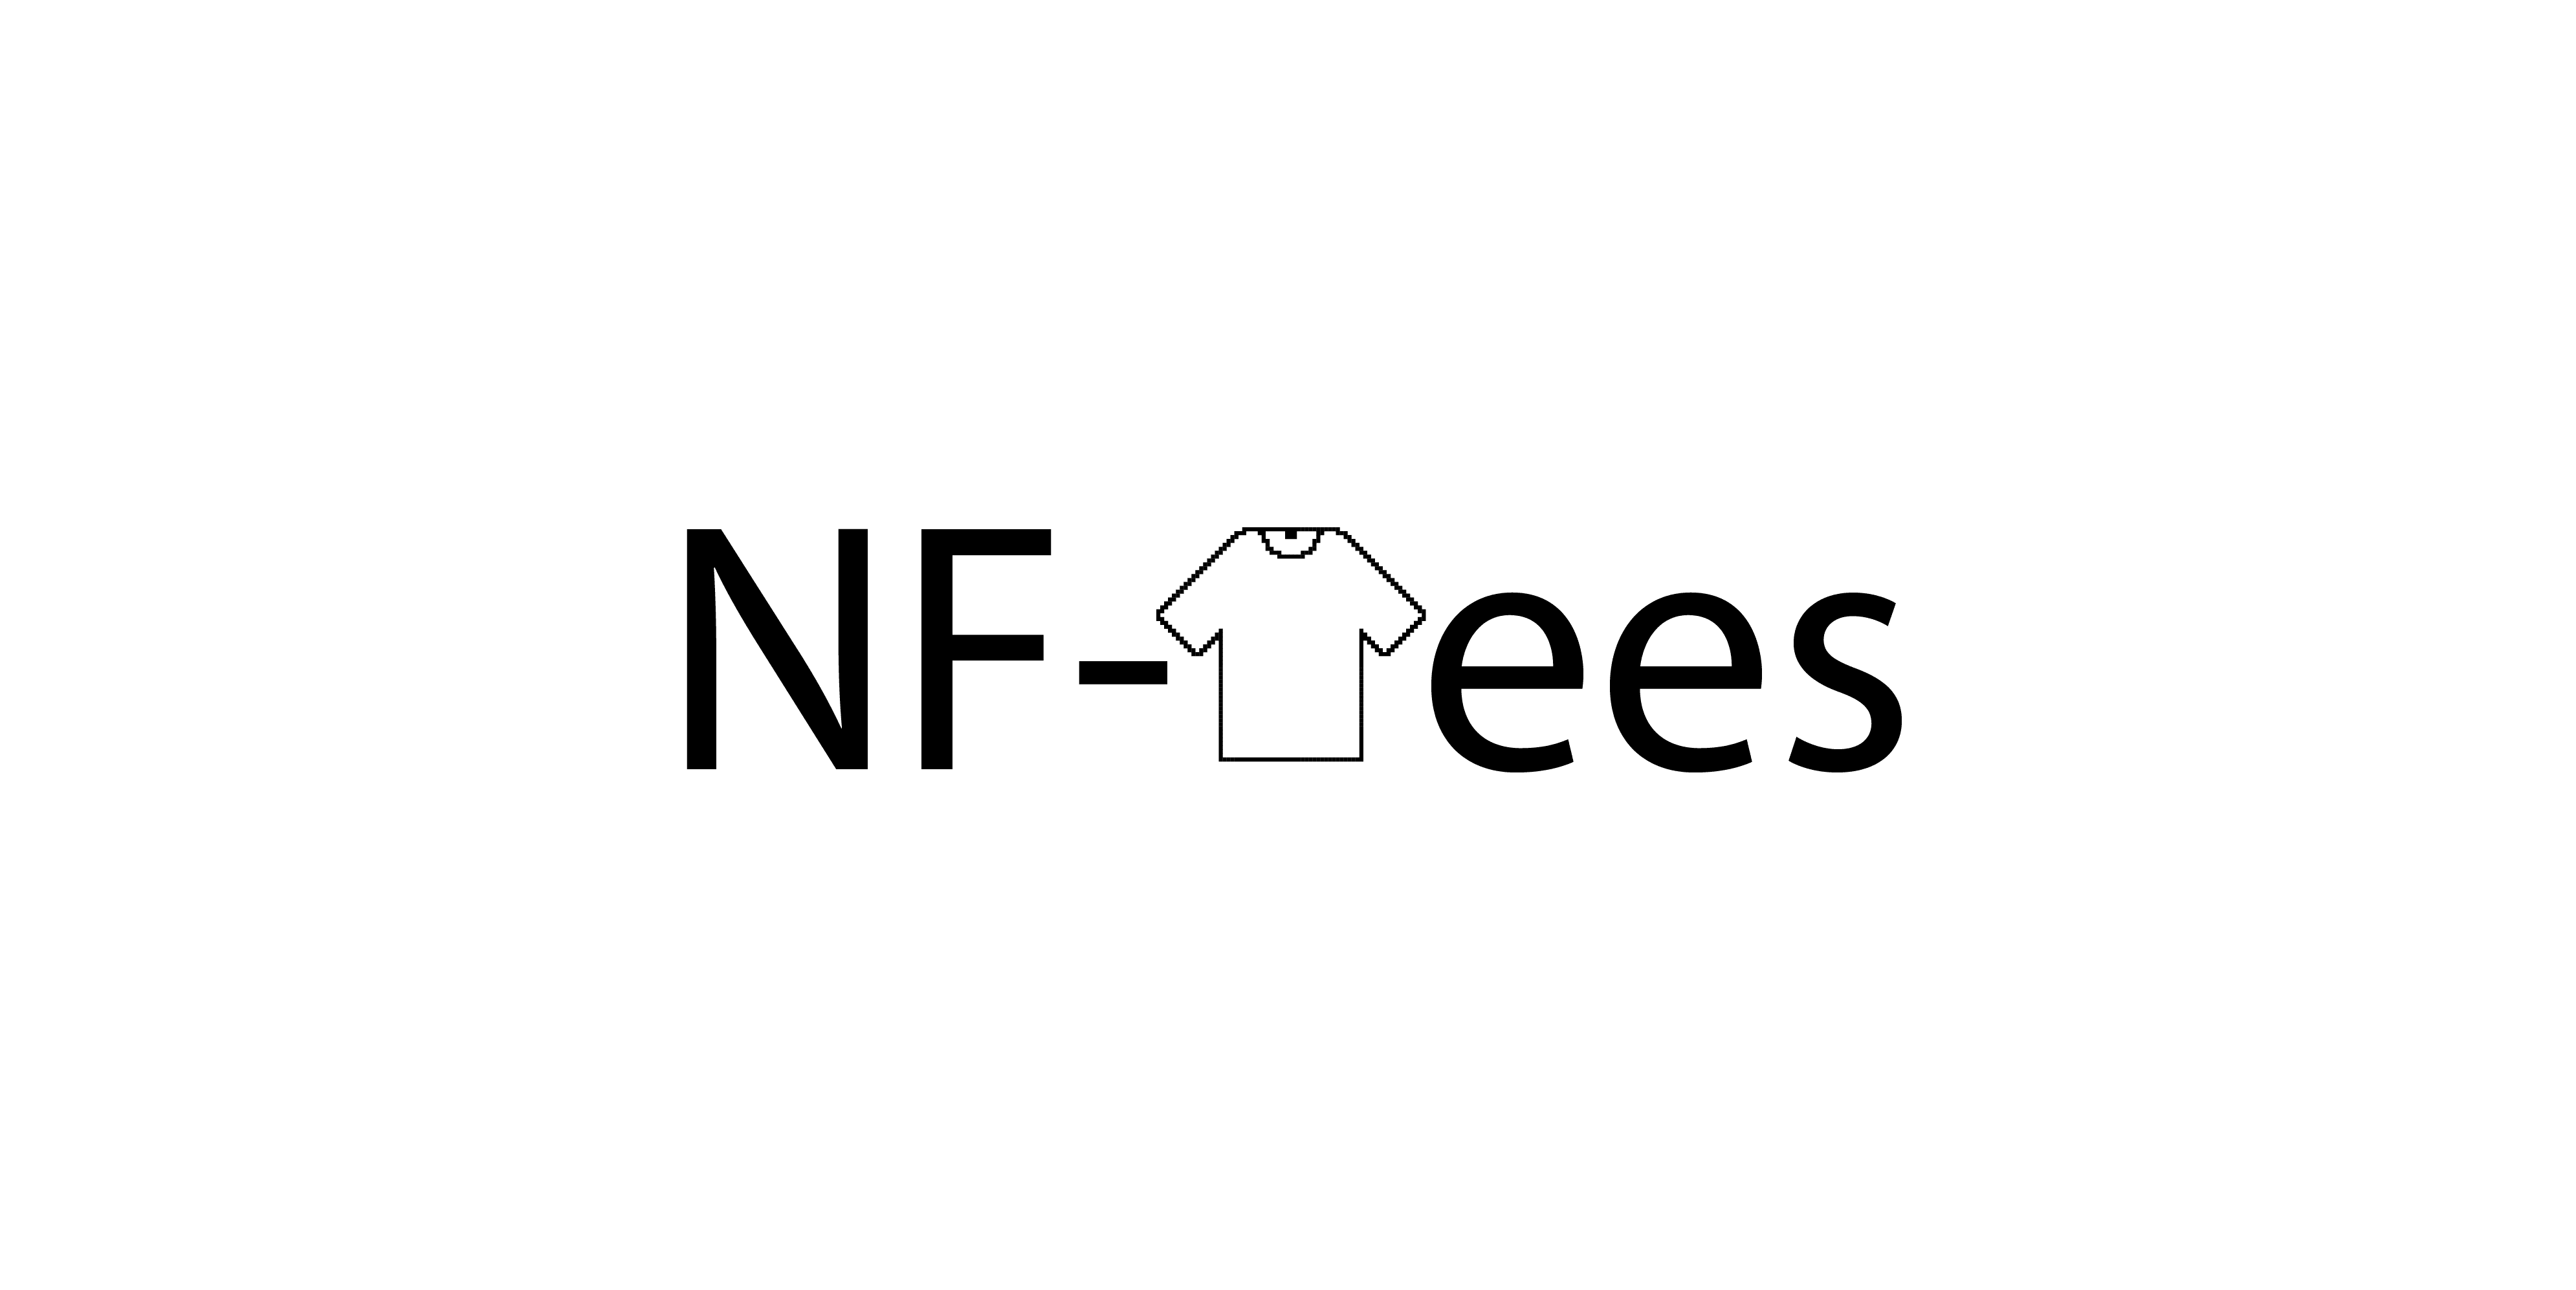 NF-Tees 横幅